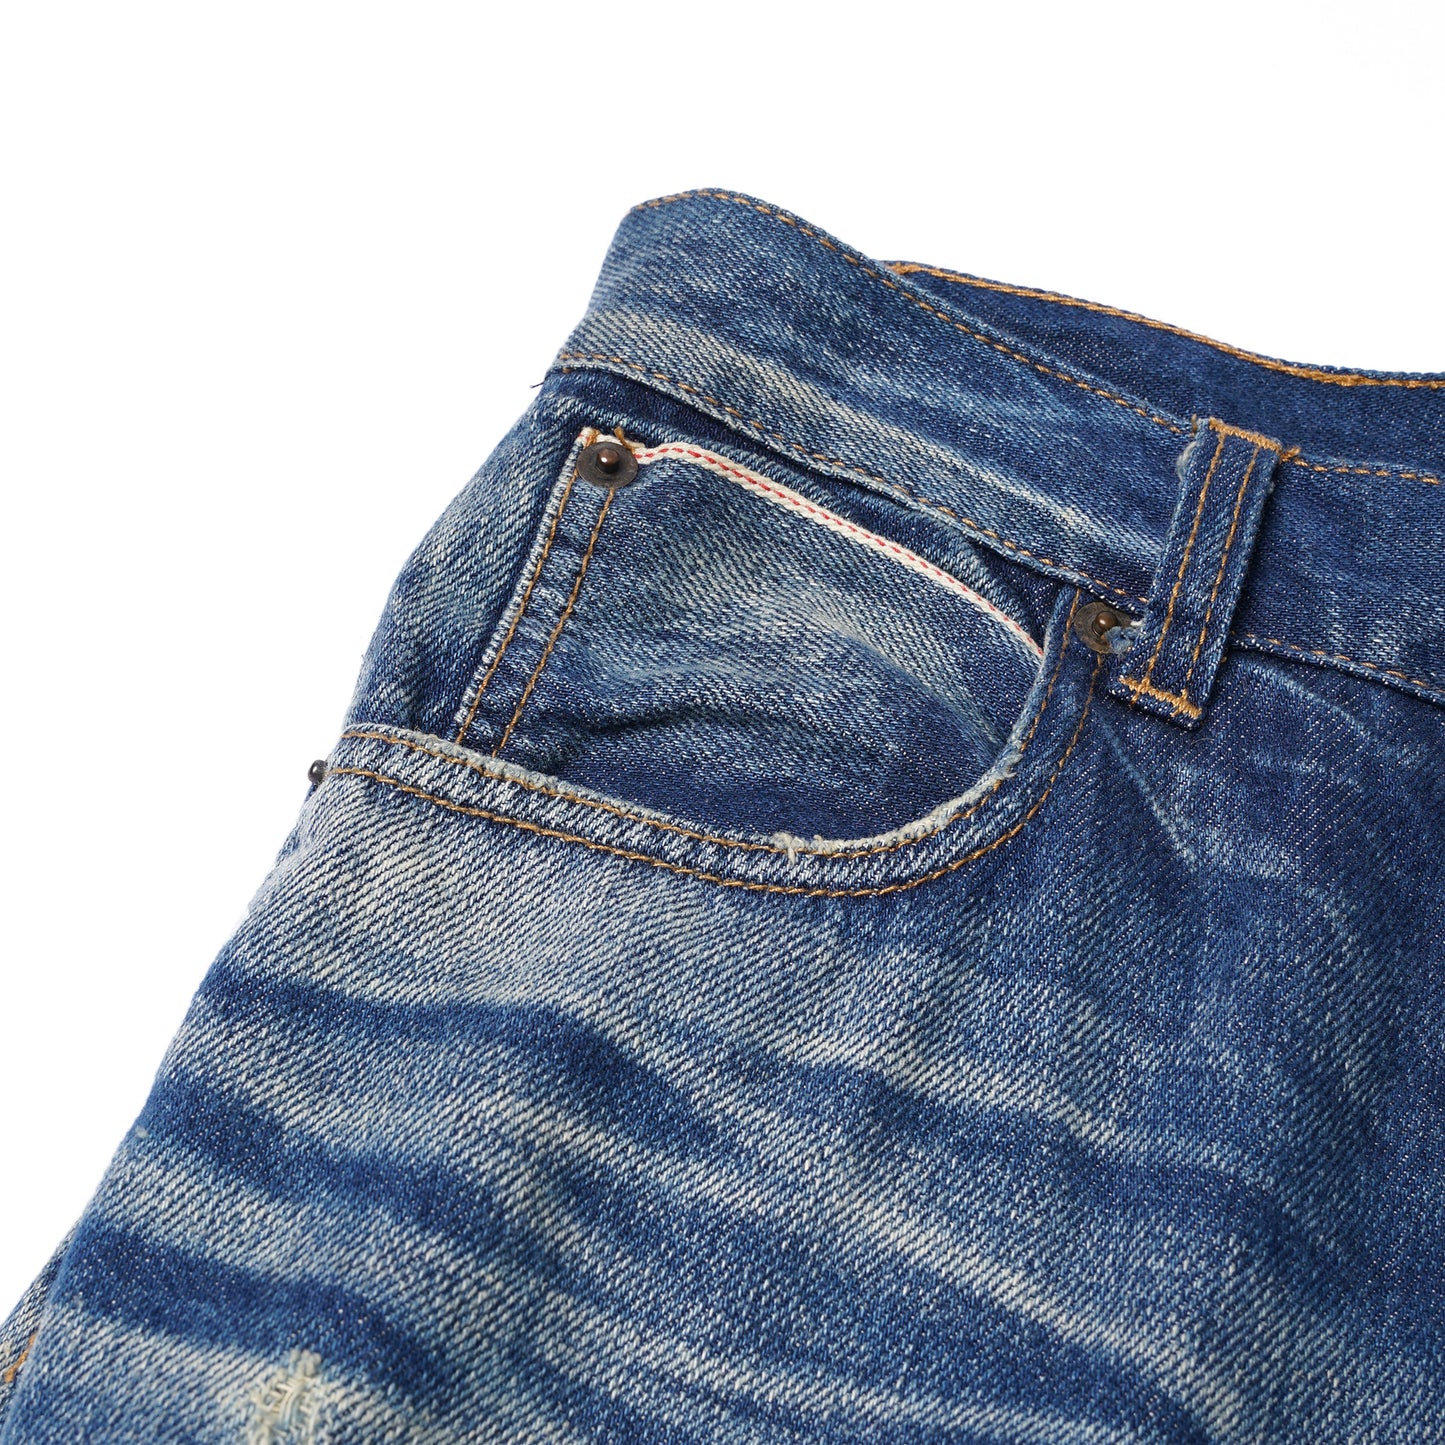 【訂製】No.1 13oz. Dirty Washed Damaged Jeans